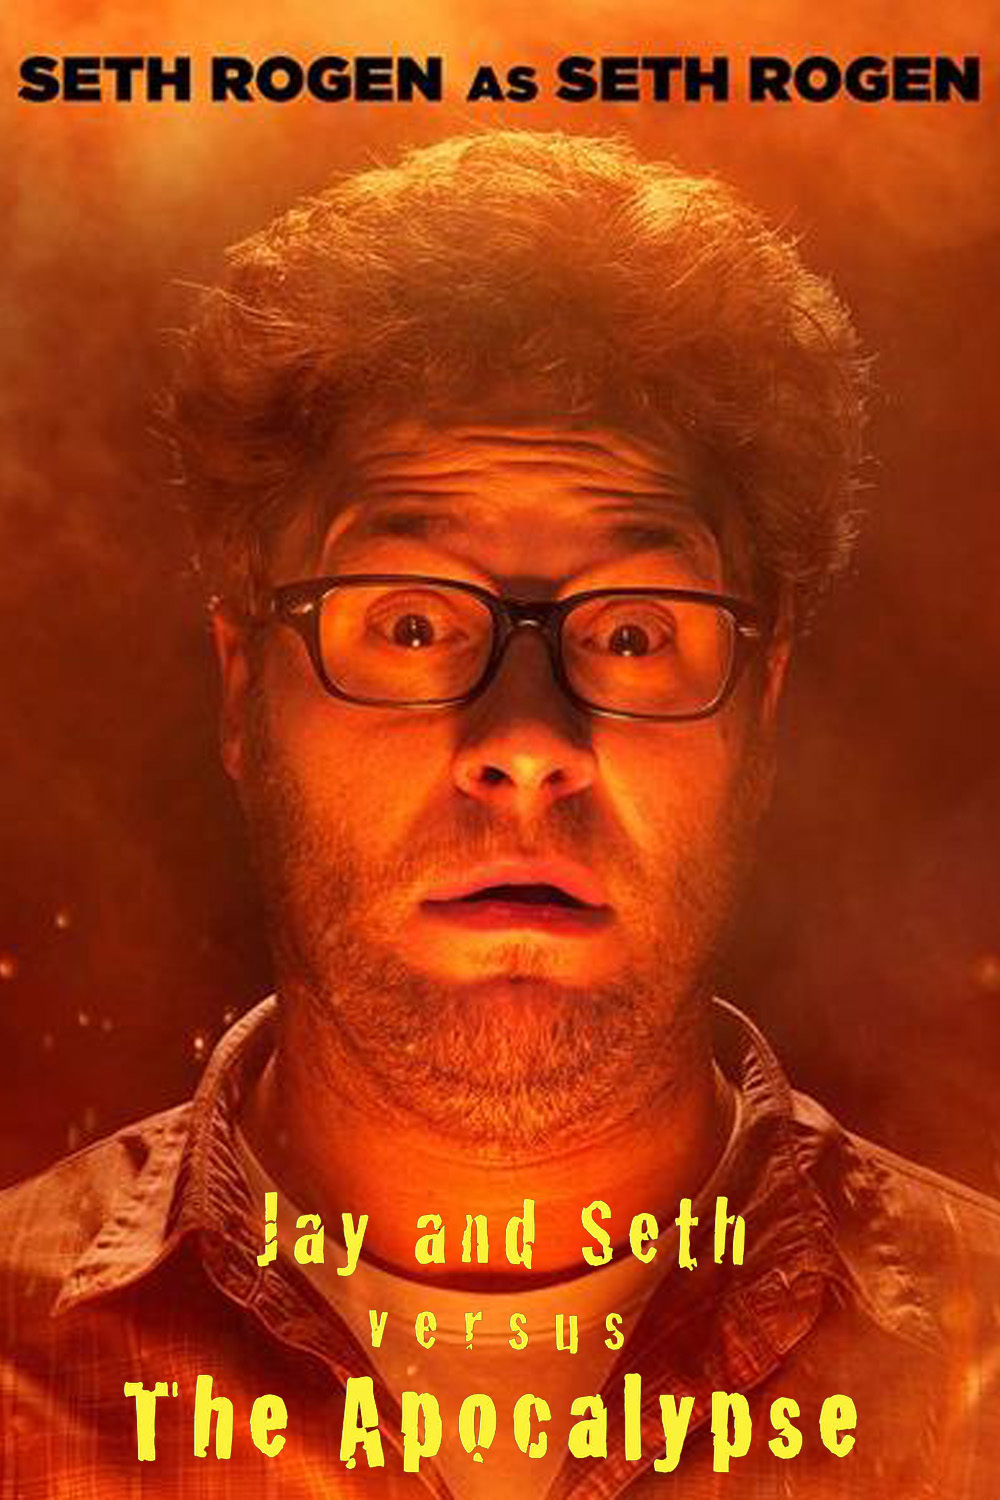  فیلم سینمایی Jay and Seth Versus the Apocalypse با حضور Seth Rogen